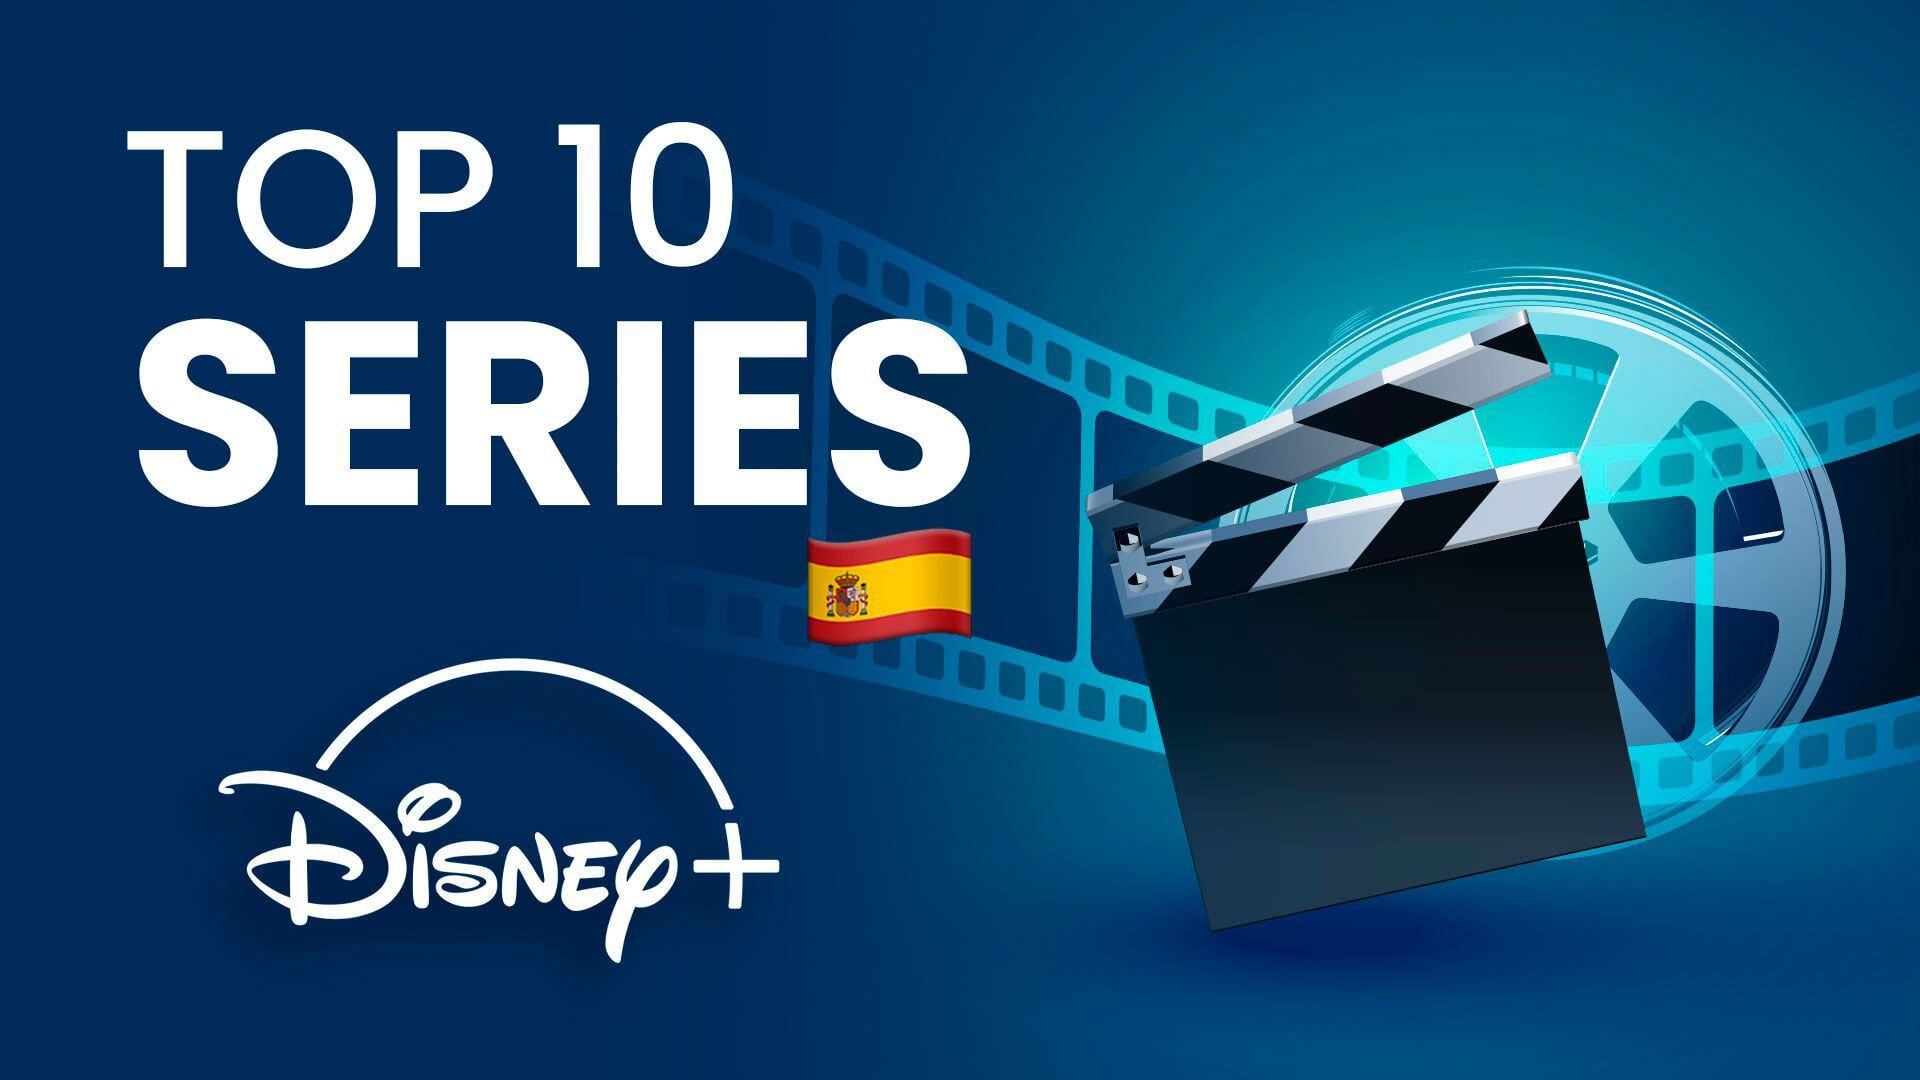 Disney Plus busca ser la plataforma número de streaming al sumar estos títulos a su catálogo. (Infobae)